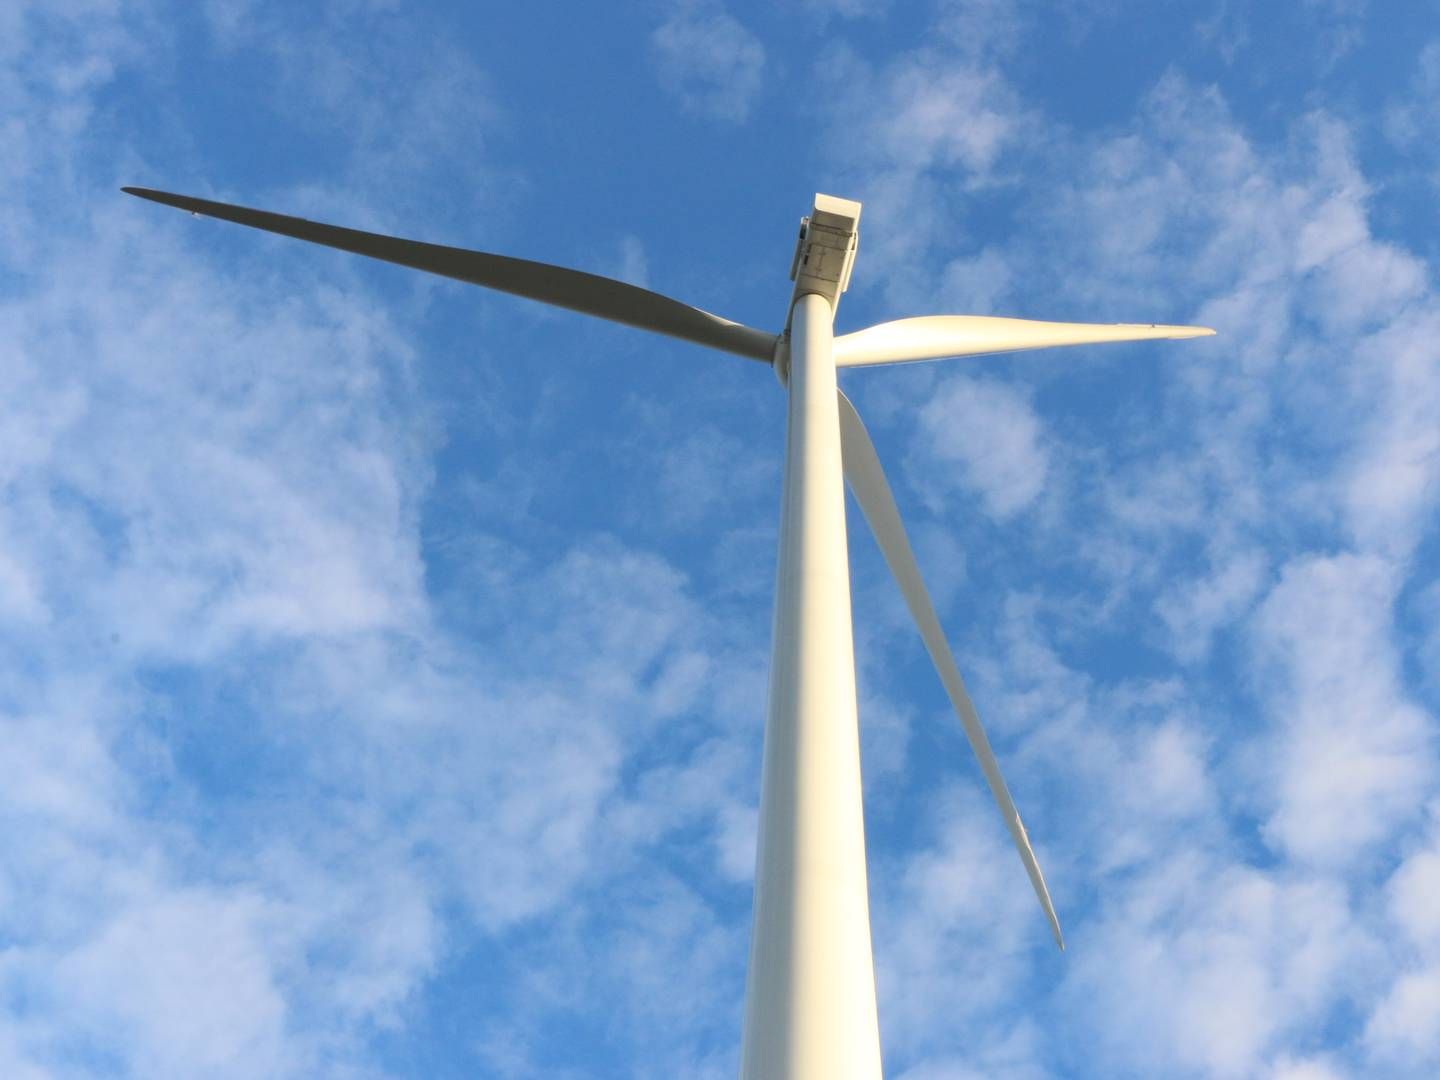 33,5 METER: Gårdbruker Knut Sigurd Felberg ønsker å sette opp en 33,5 meter høy vindturbin på sin gård, men har møtt motstand for byggeplanene i kommunen. | Foto: Anders Lie Brenna